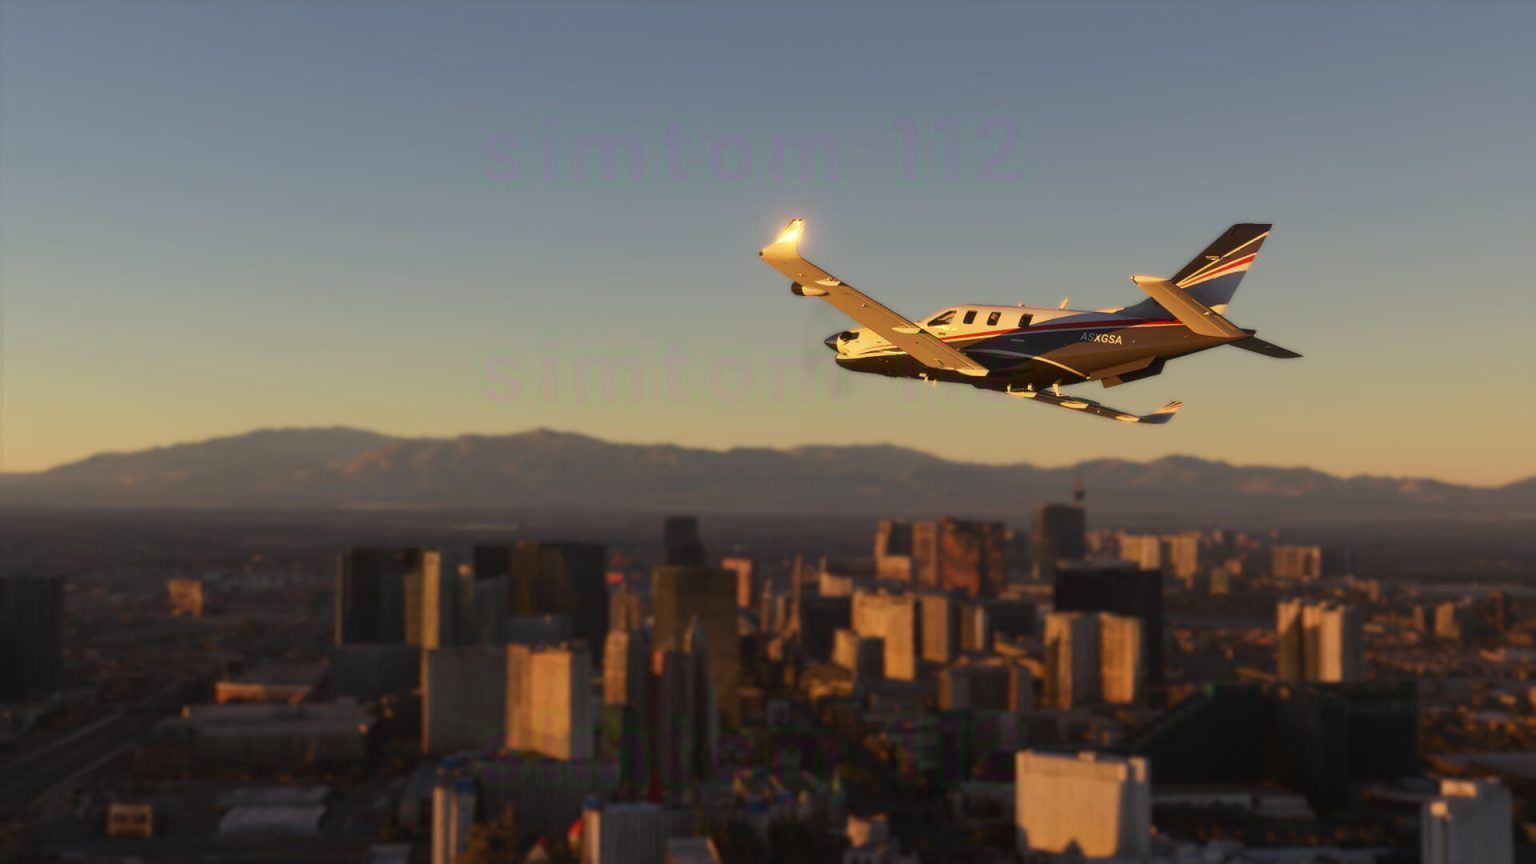 Microsoft Flight Simulator 2020 captura 9 detalle de la avioneta